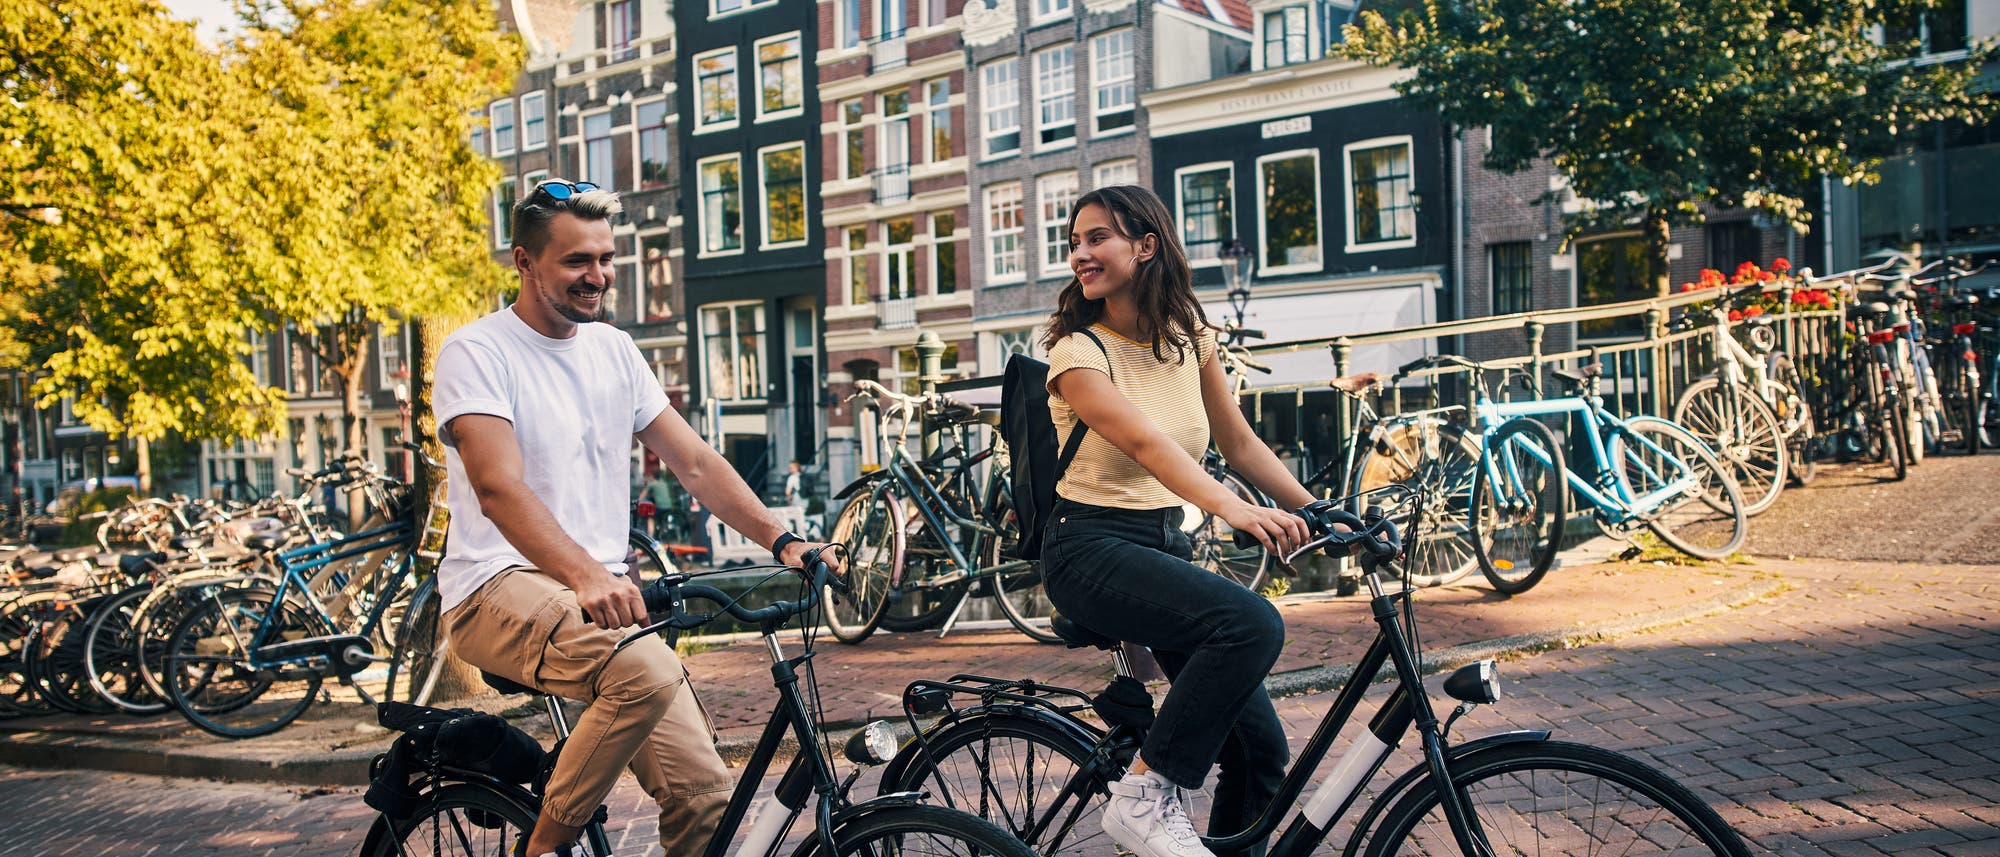 In Städten wie Amsterdam kommt man mit dem Fahrrad oft bequemer und schneller ans Ziel als mit dem Auto.